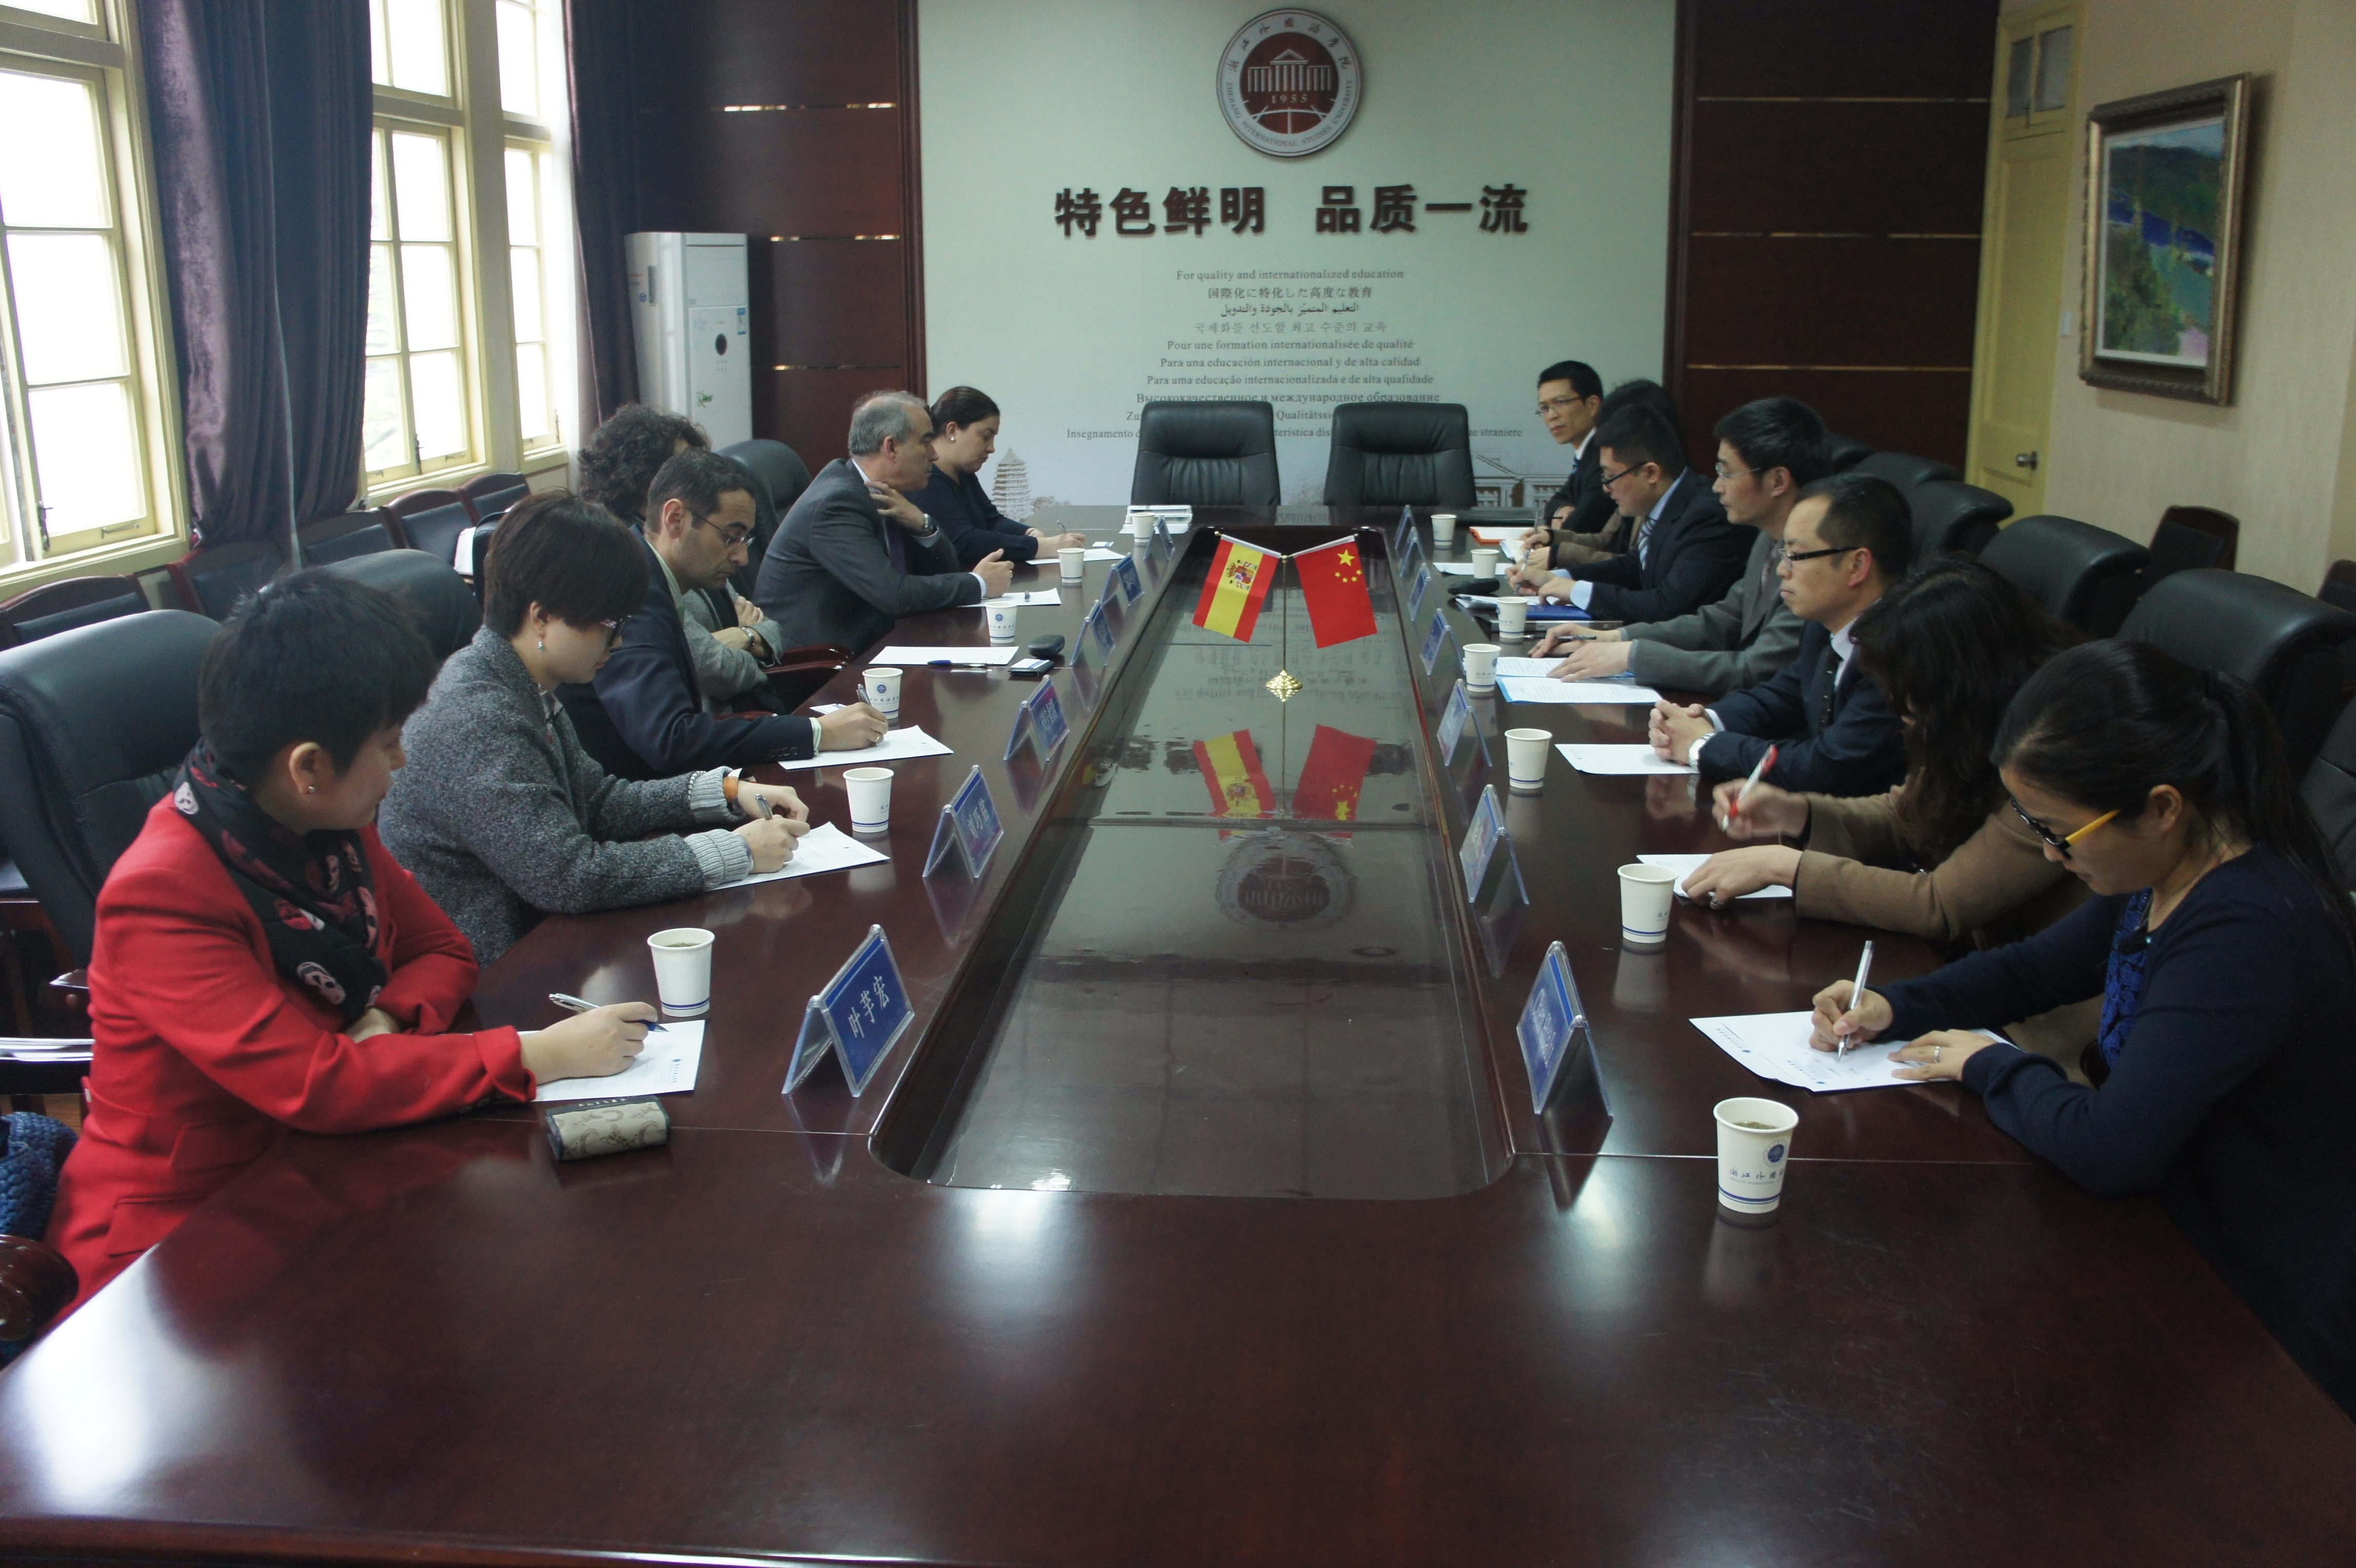 La Universidad de Salamanca culmina su visita a China con la puesta en marcha de varios proyectos con universidades del país